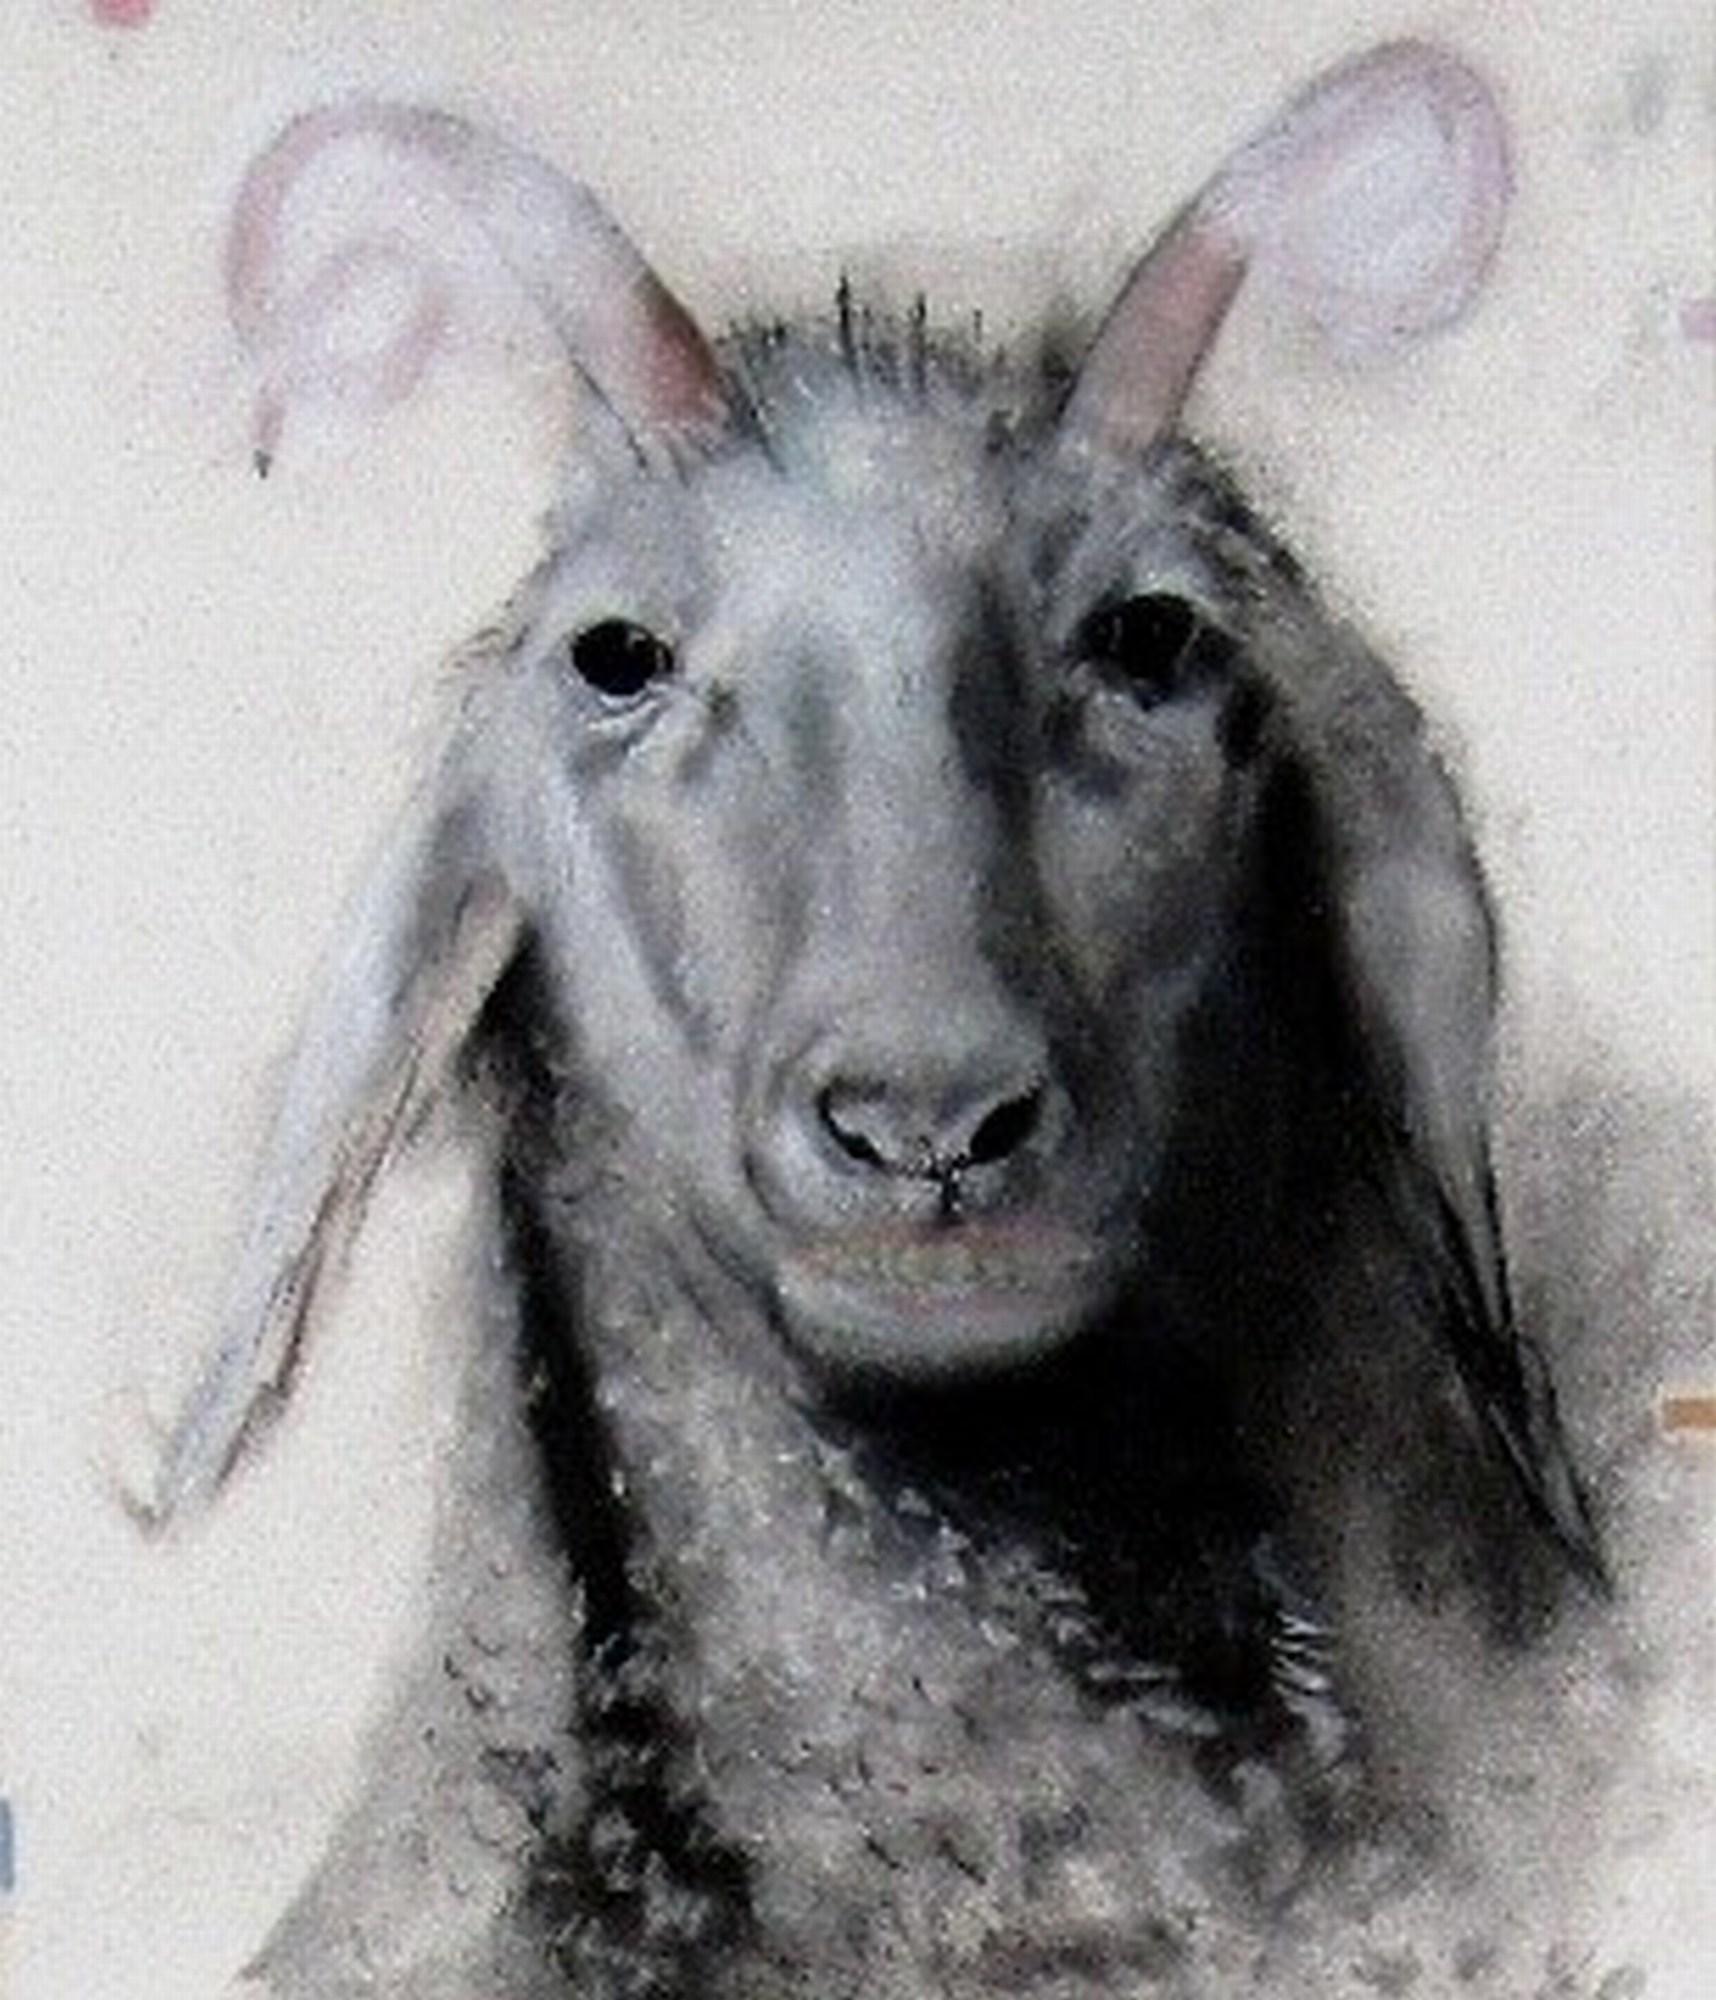 The Goat - Art by Joseph Broghammer